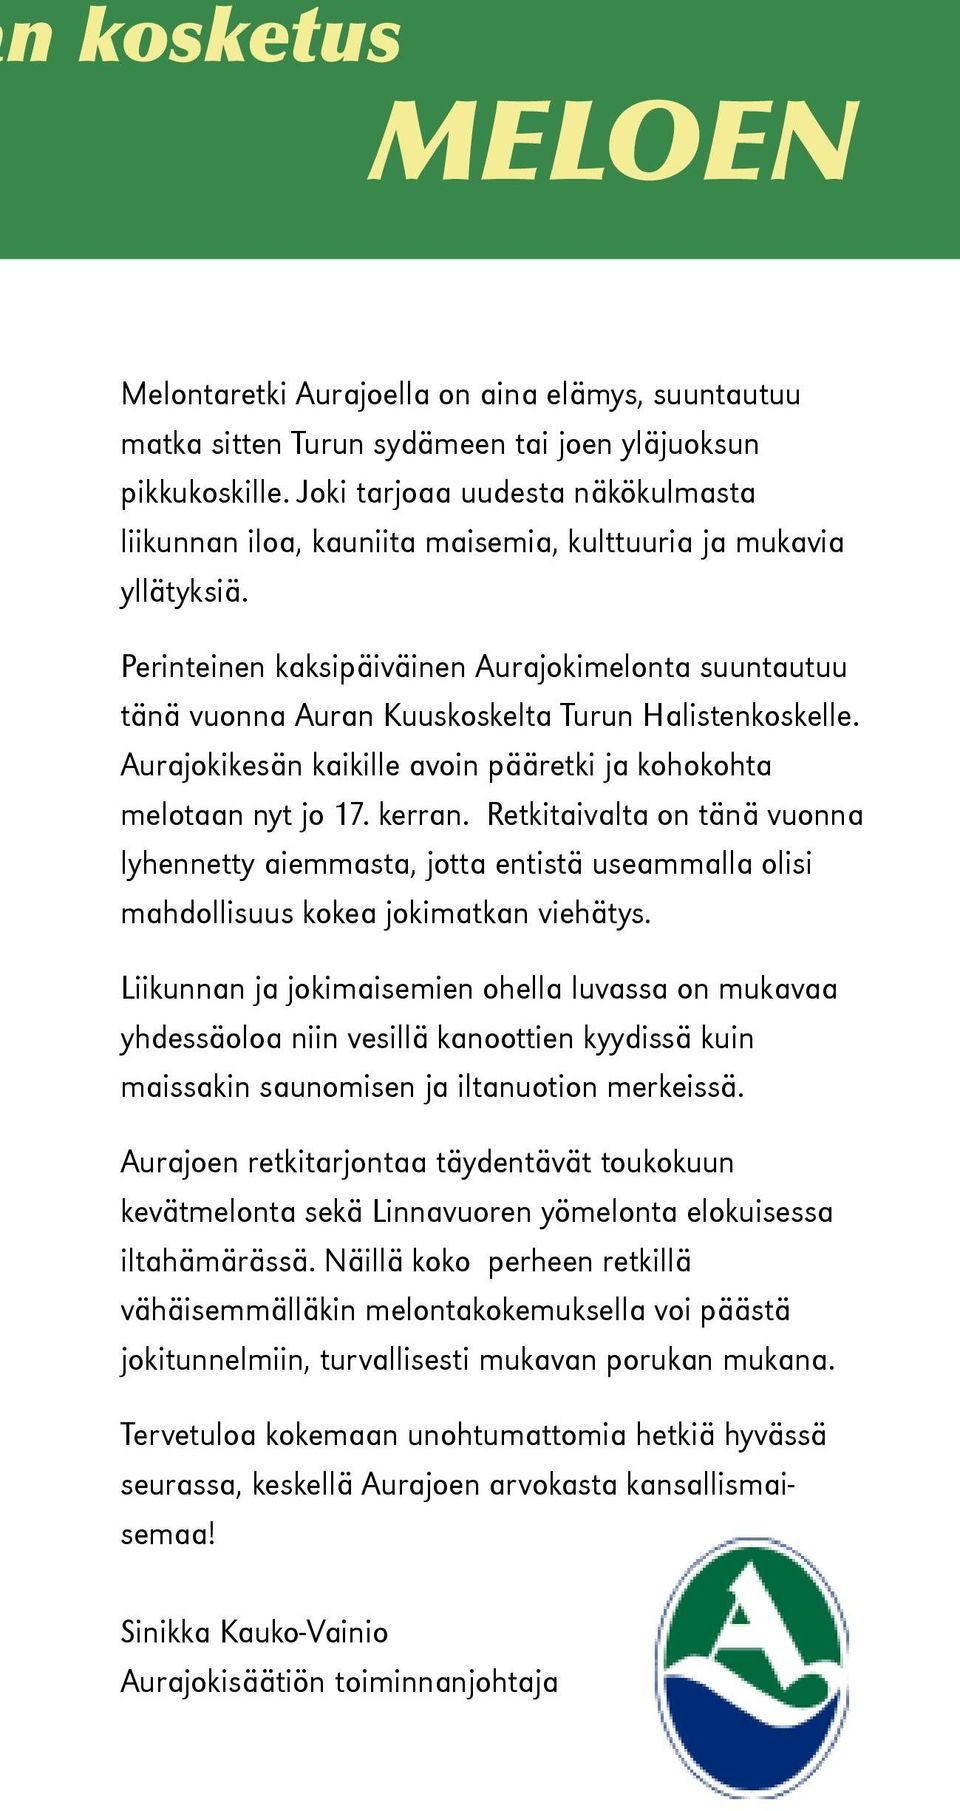 Perinteinen kaksipäiväinen Aurajokimelonta suuntautuu tänä vuonna Auran Kuuskoskelta Turun Halistenkoskelle. Aurajokikesän kaikille avoin pääretki ja kohokohta melotaan nyt jo 17. kerran.